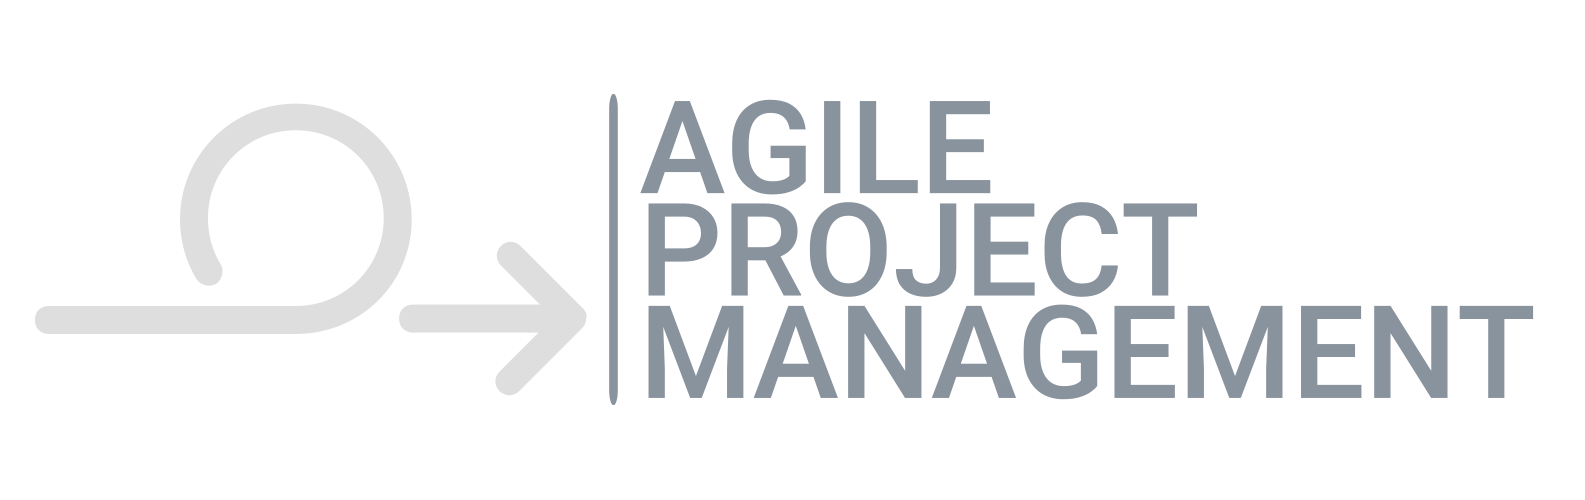 Agile Project Management Logo